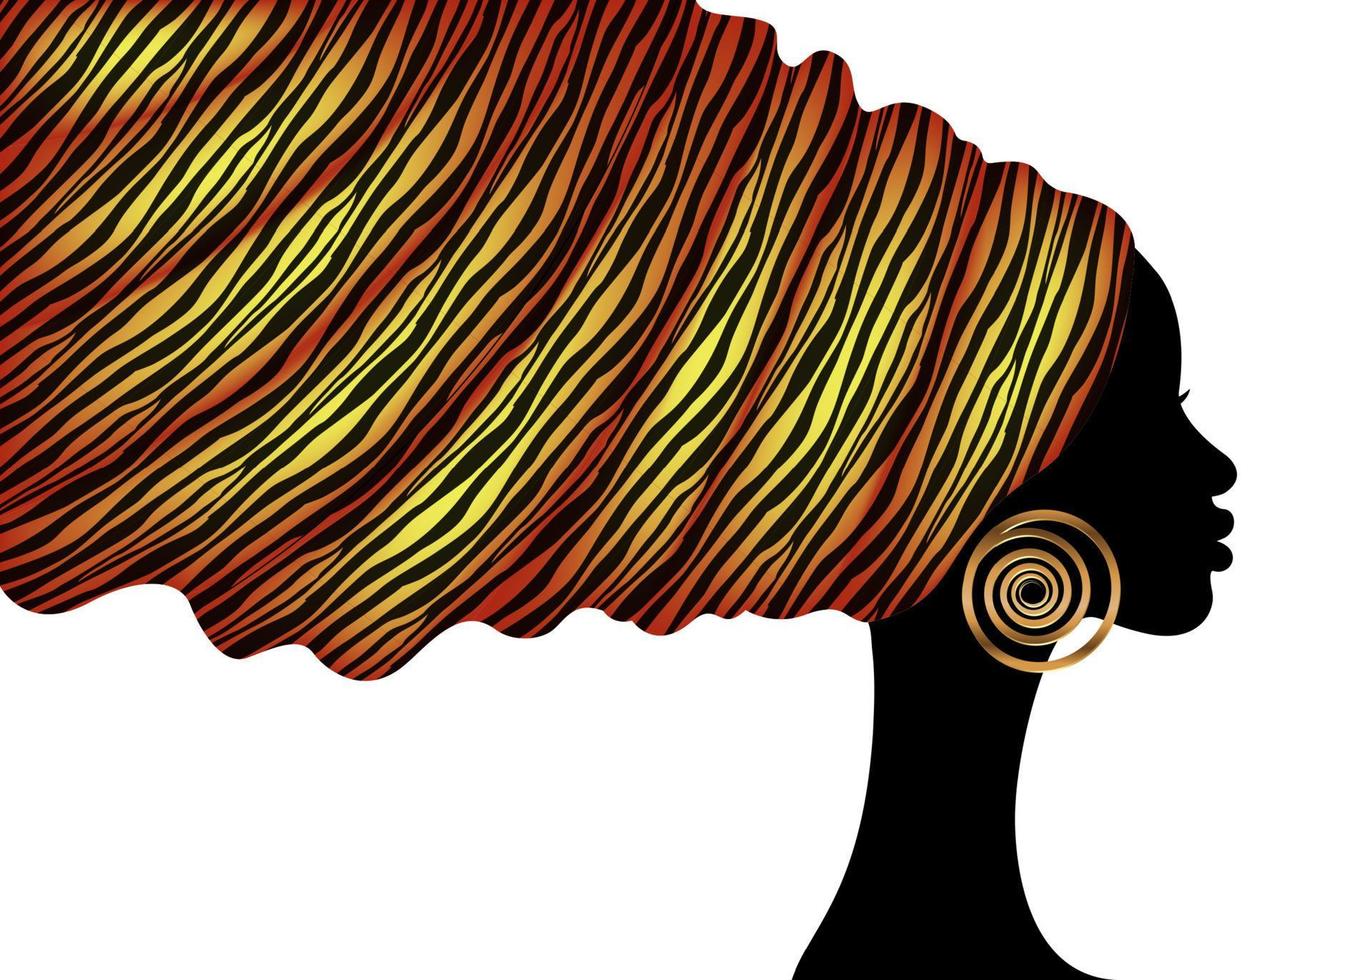 Envoltório de cabeça de turbante com estampa de animal africano, mulher de beleza de retrato em penteados afro, vestido de cabelo de mulheres negras de design de logotipo, modelo étnico africano vetorial isolado no fundo branco vetor